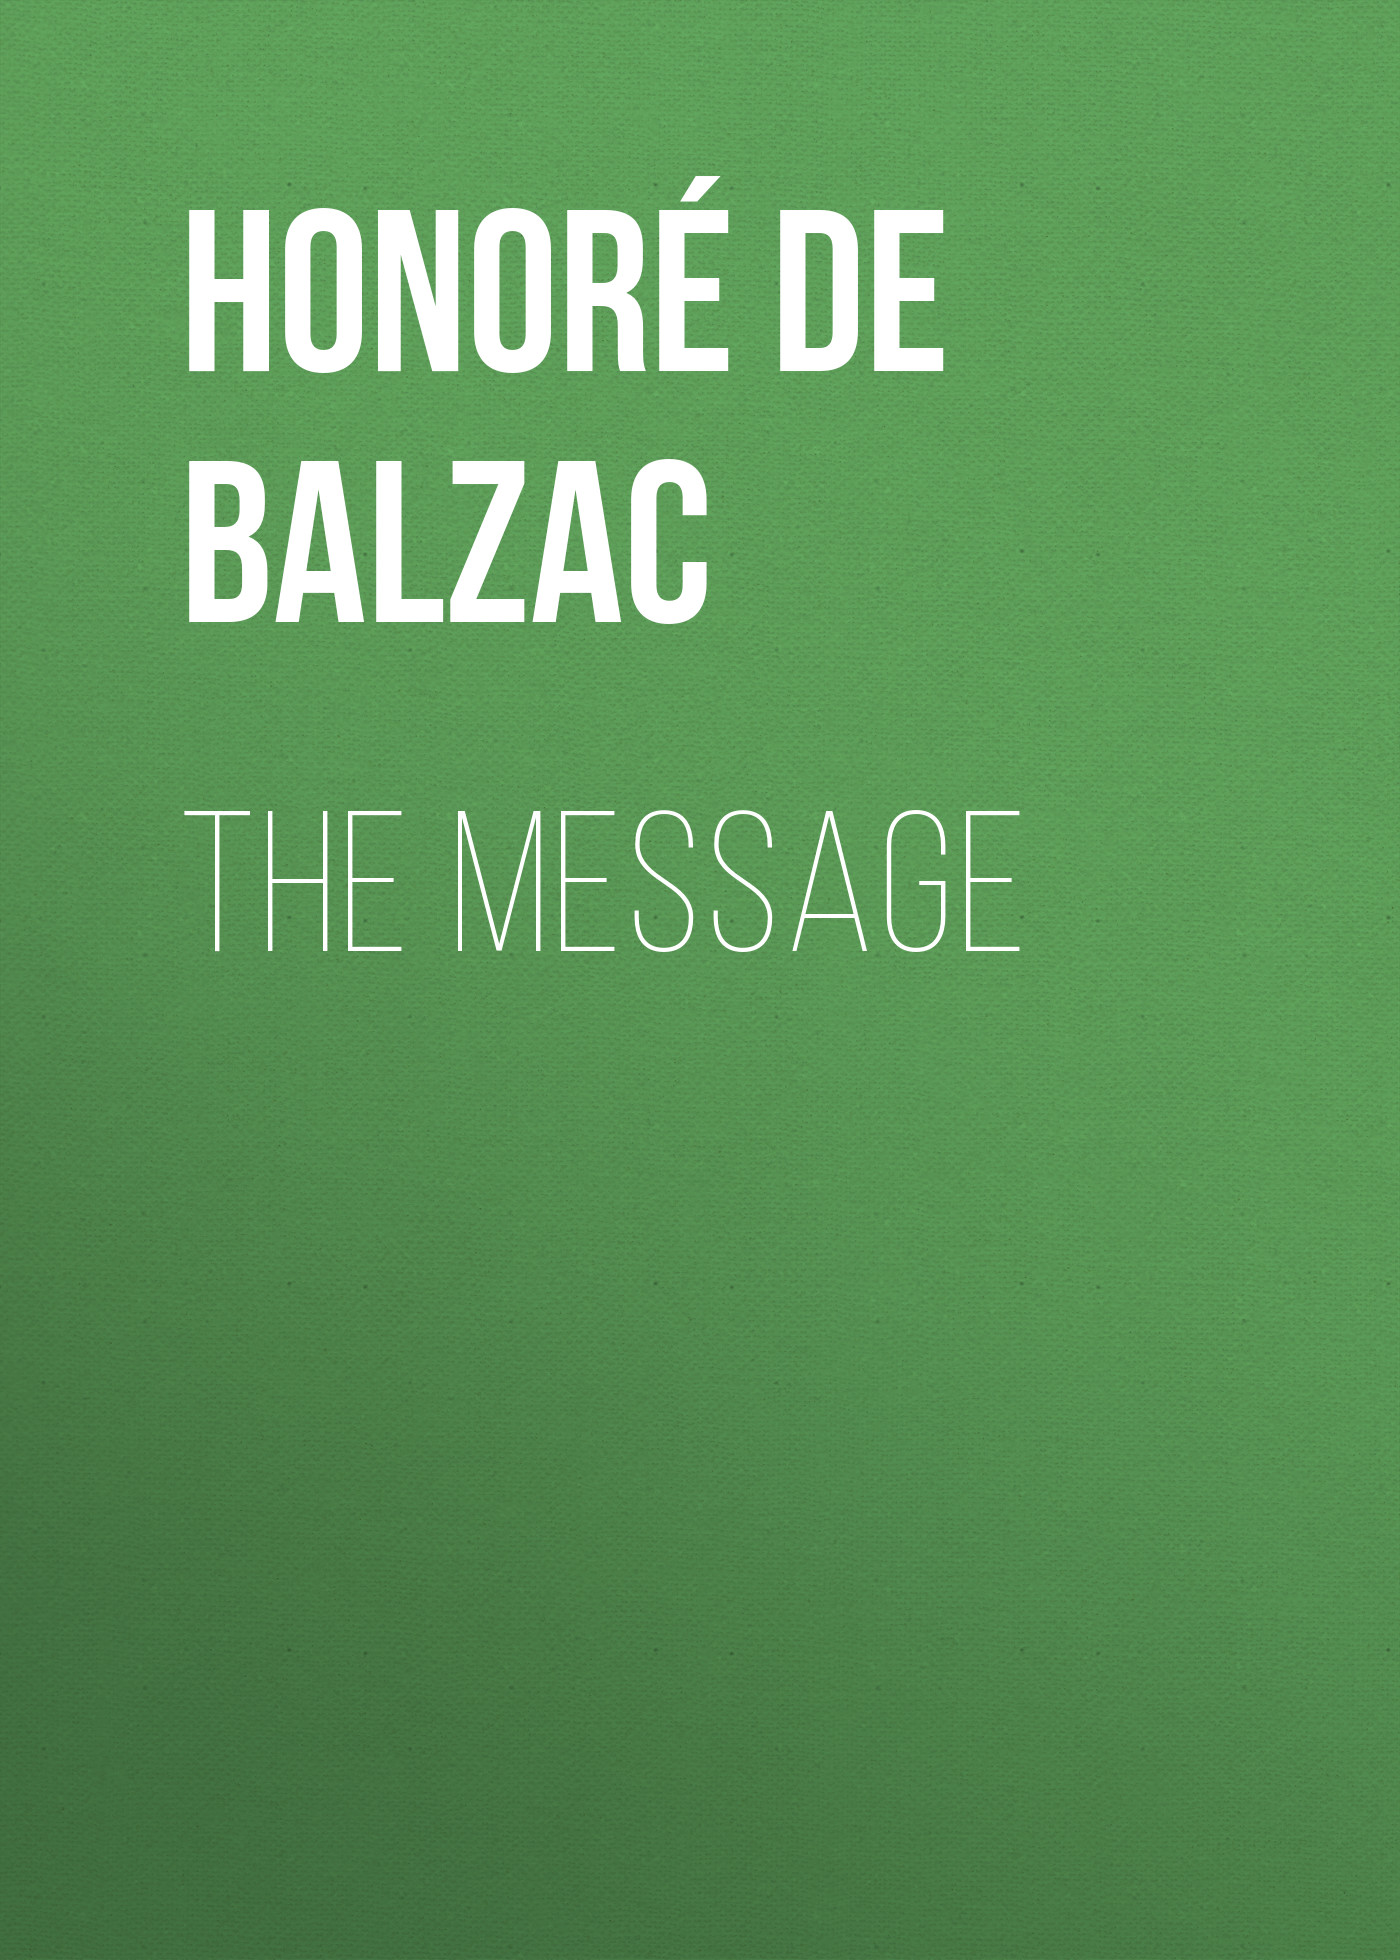 Книга The Message из серии , созданная Honoré Balzac, может относится к жанру Литература 19 века, Зарубежная старинная литература, Зарубежная классика. Стоимость электронной книги The Message с идентификатором 25020763 составляет 0 руб.